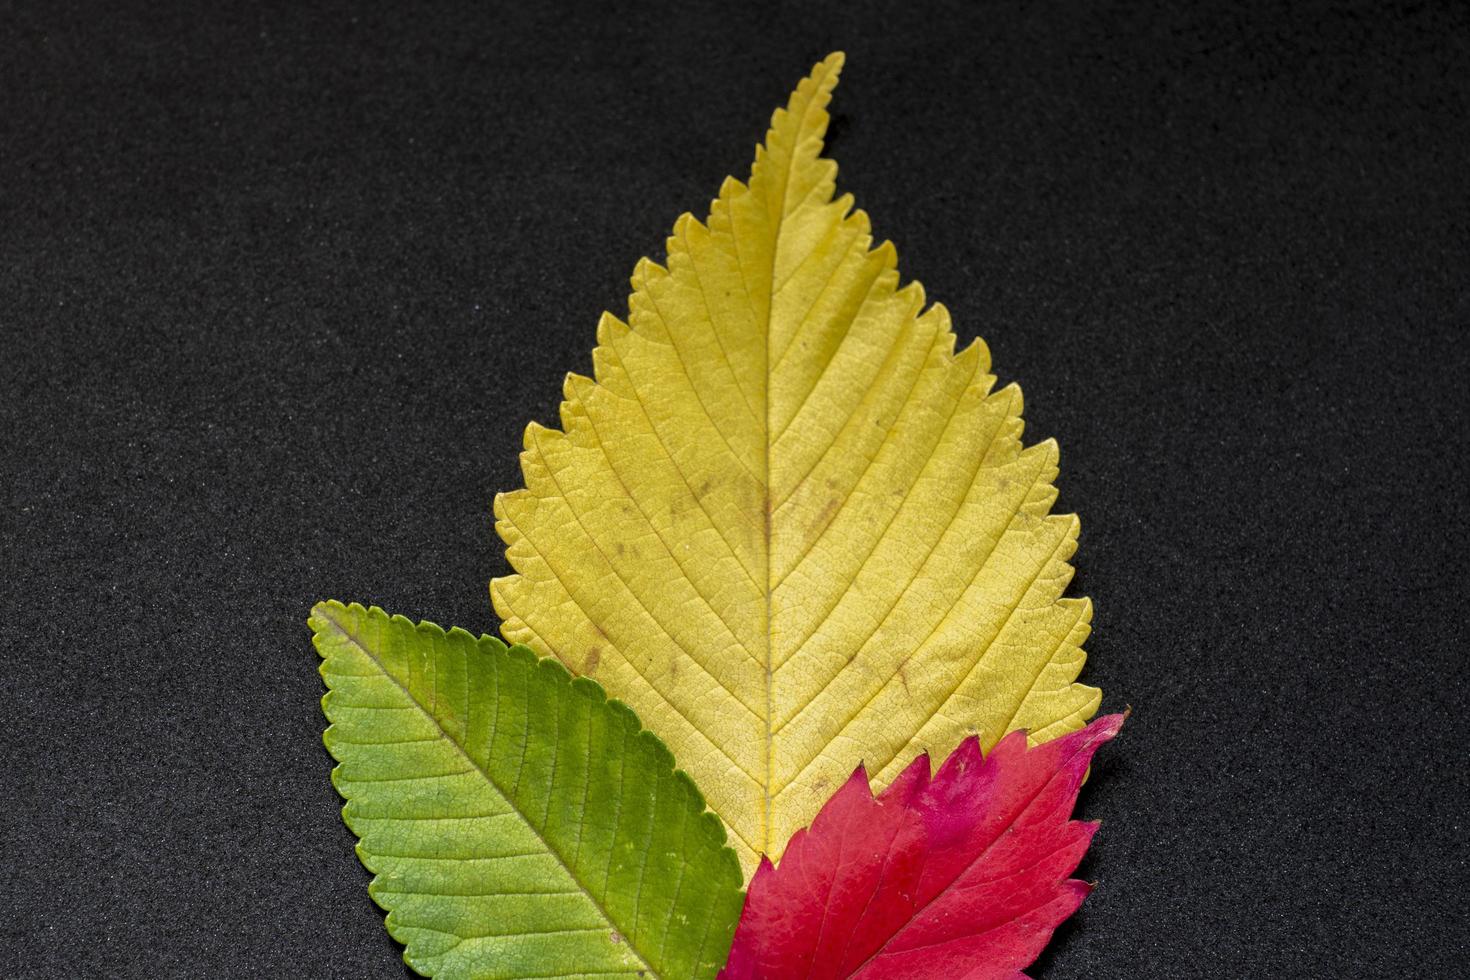 feuilles d'orme d'automne colorées sur fond noir photo